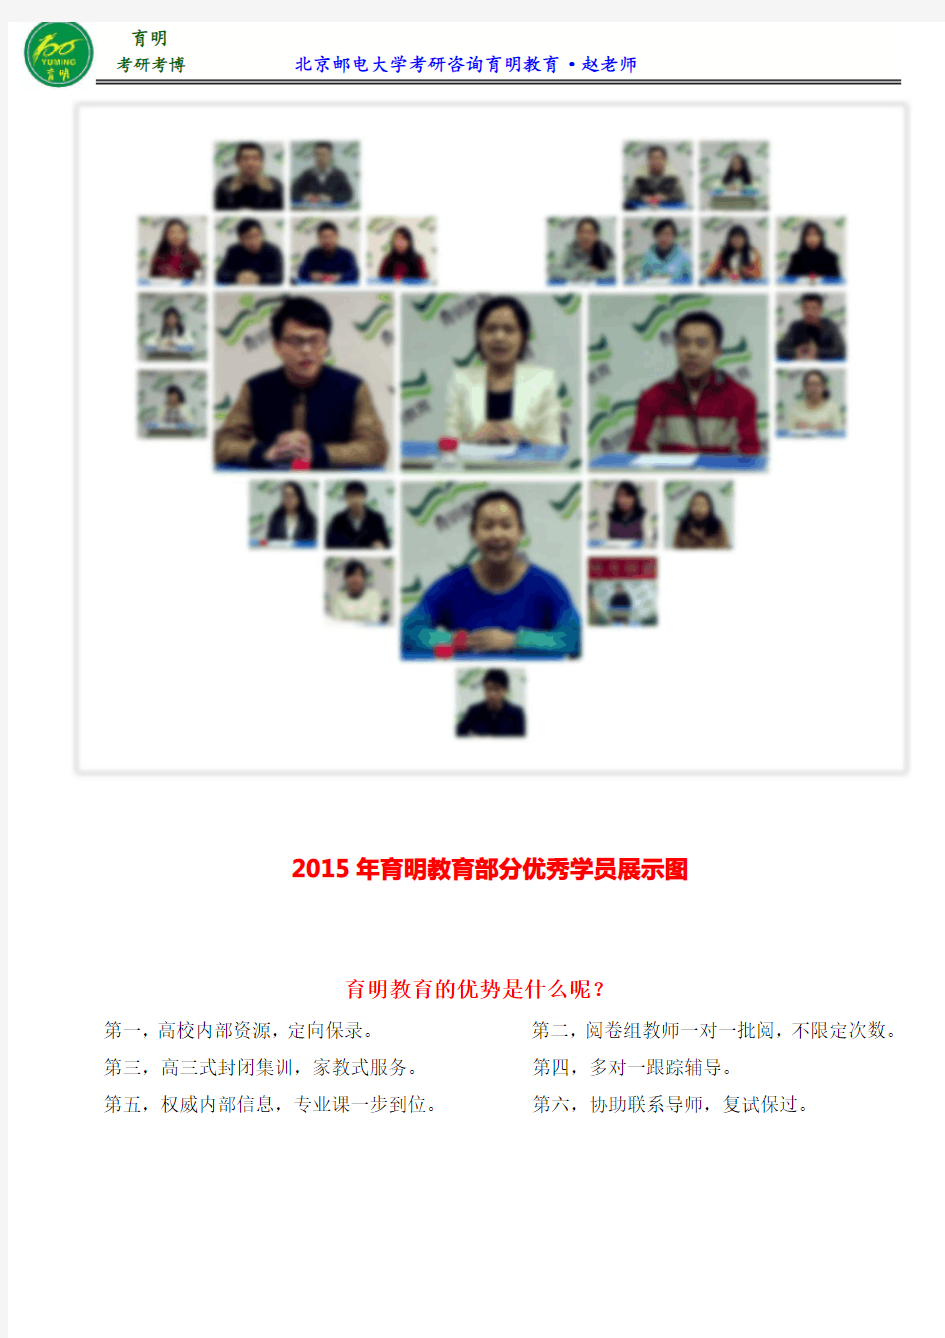 2017北京邮电大学公共管理专业考研参考书、参考书笔记、考试科目、考研辅导、权威资料分享